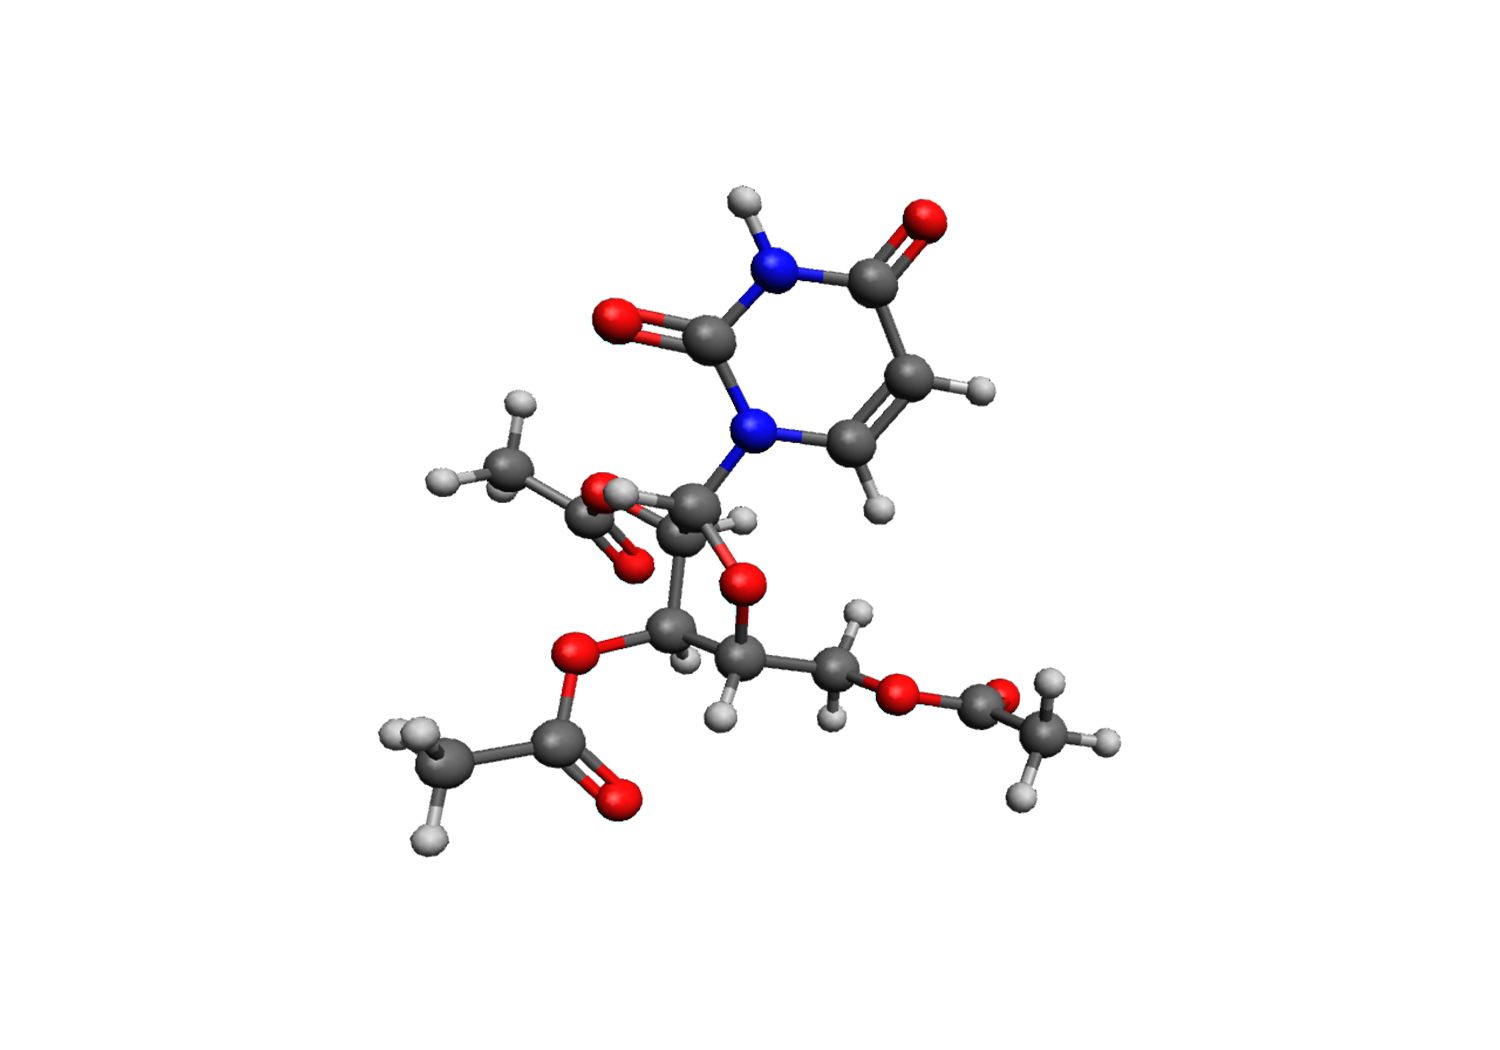 Triacetyluridine (TAU)